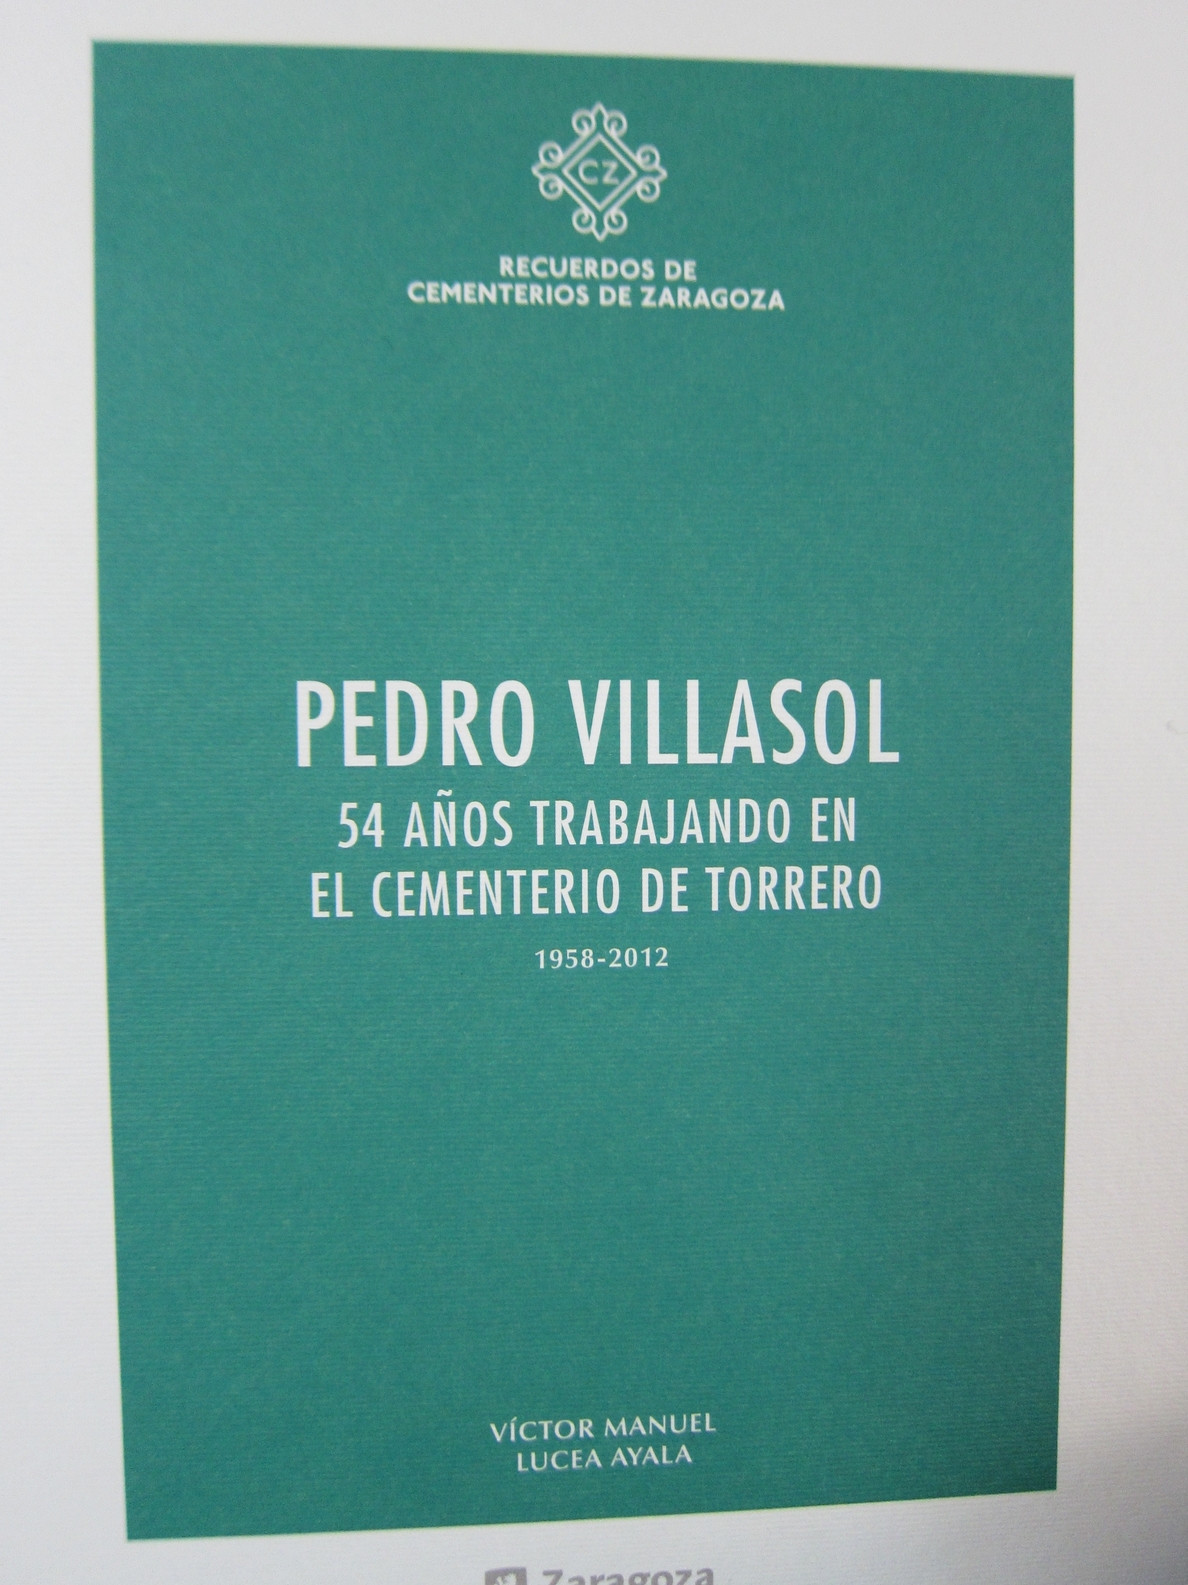 El cementerio de Torrero amplía sus publicaciones con la edición de un libro dedicado a Pedro Villasol